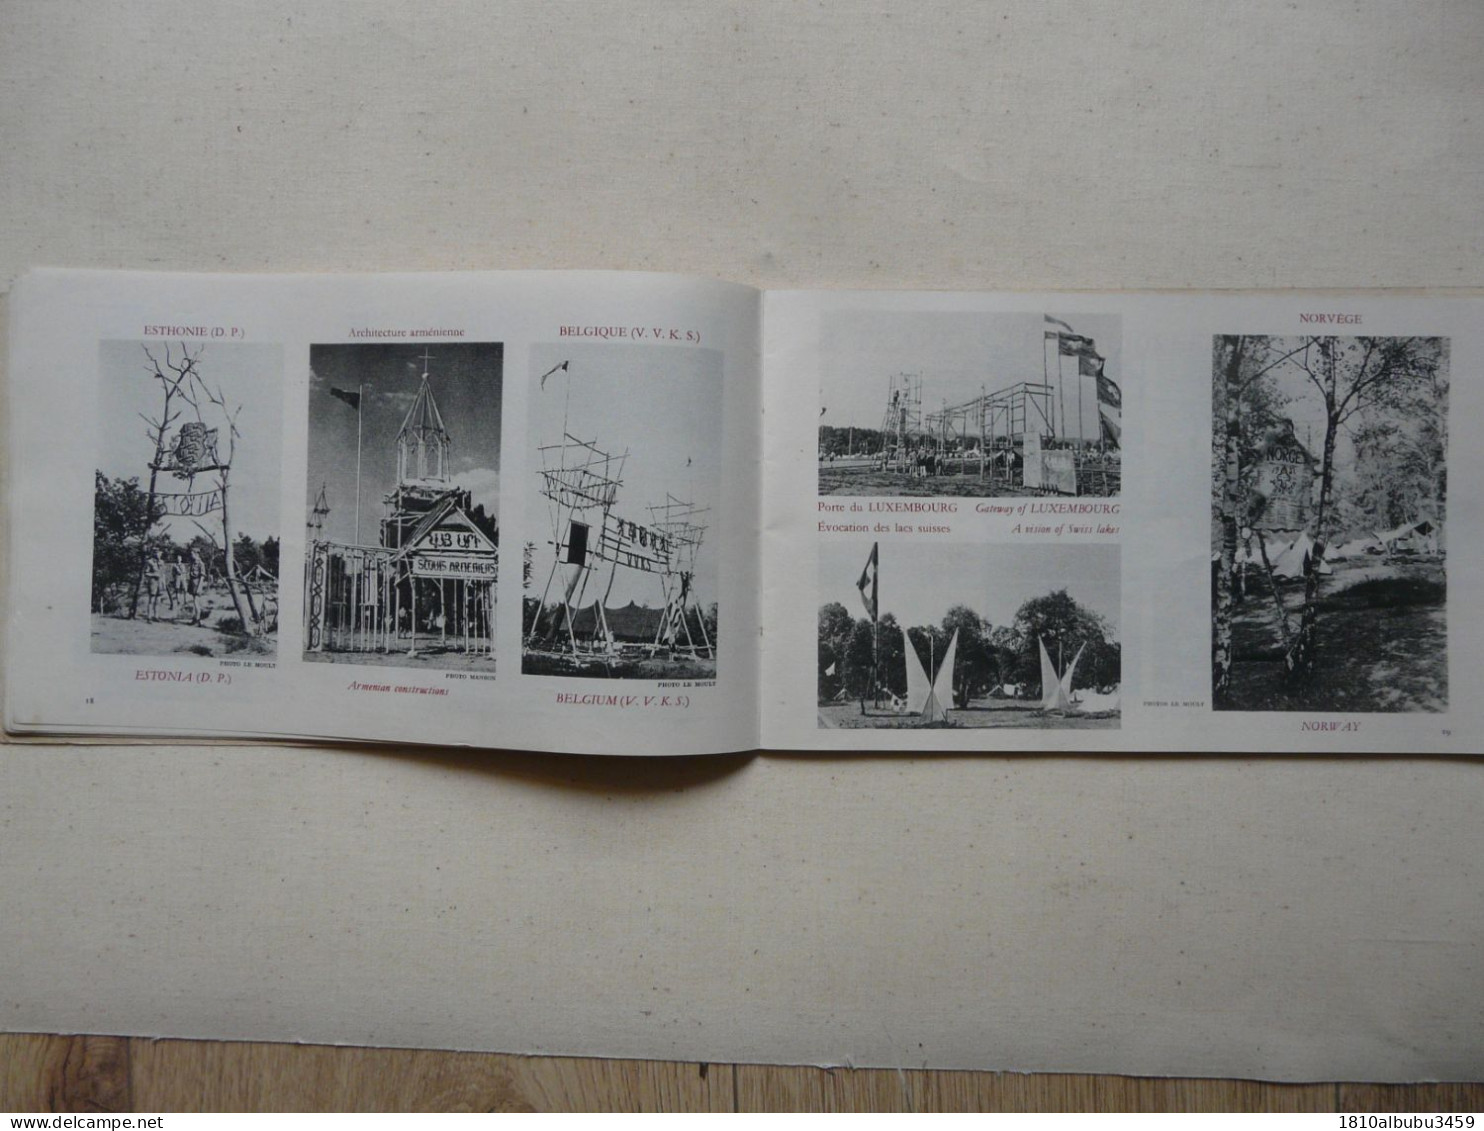 LE JAMBOREE DE LA PAIX - MOISSON 1947 : Broché 72 pages - Nombreuses illustrations et photos en noir et blanc